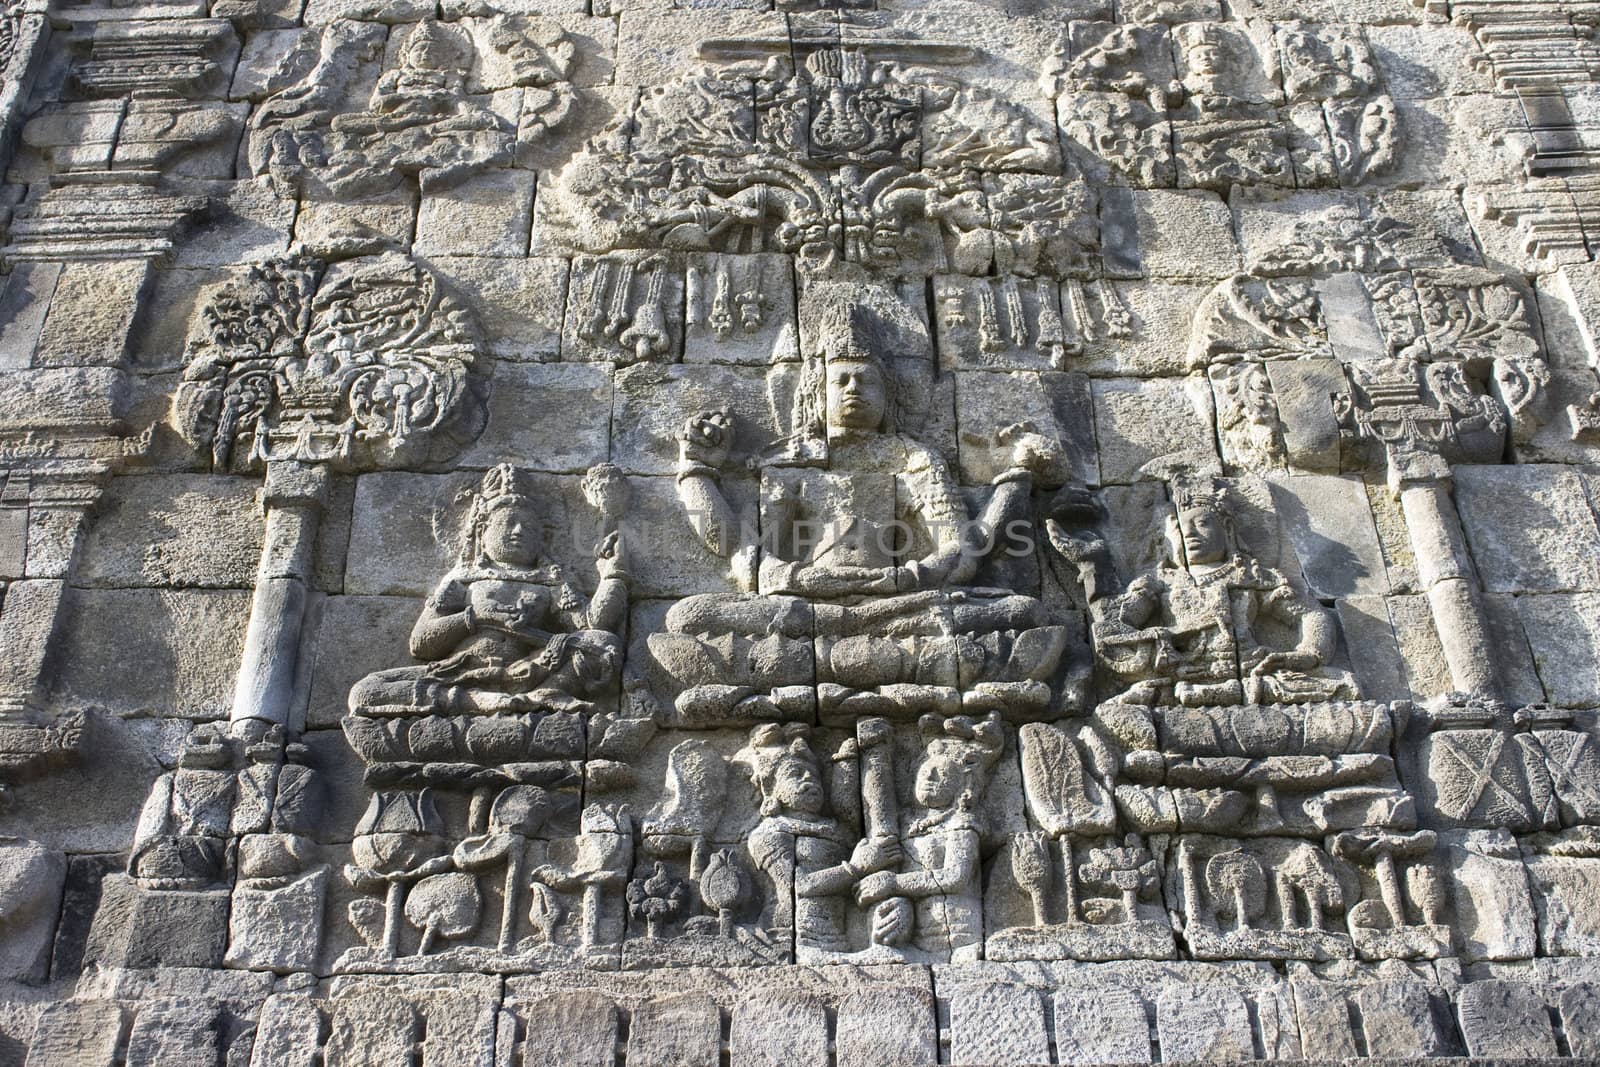 Wall Craft found in a temple near Borobudur.